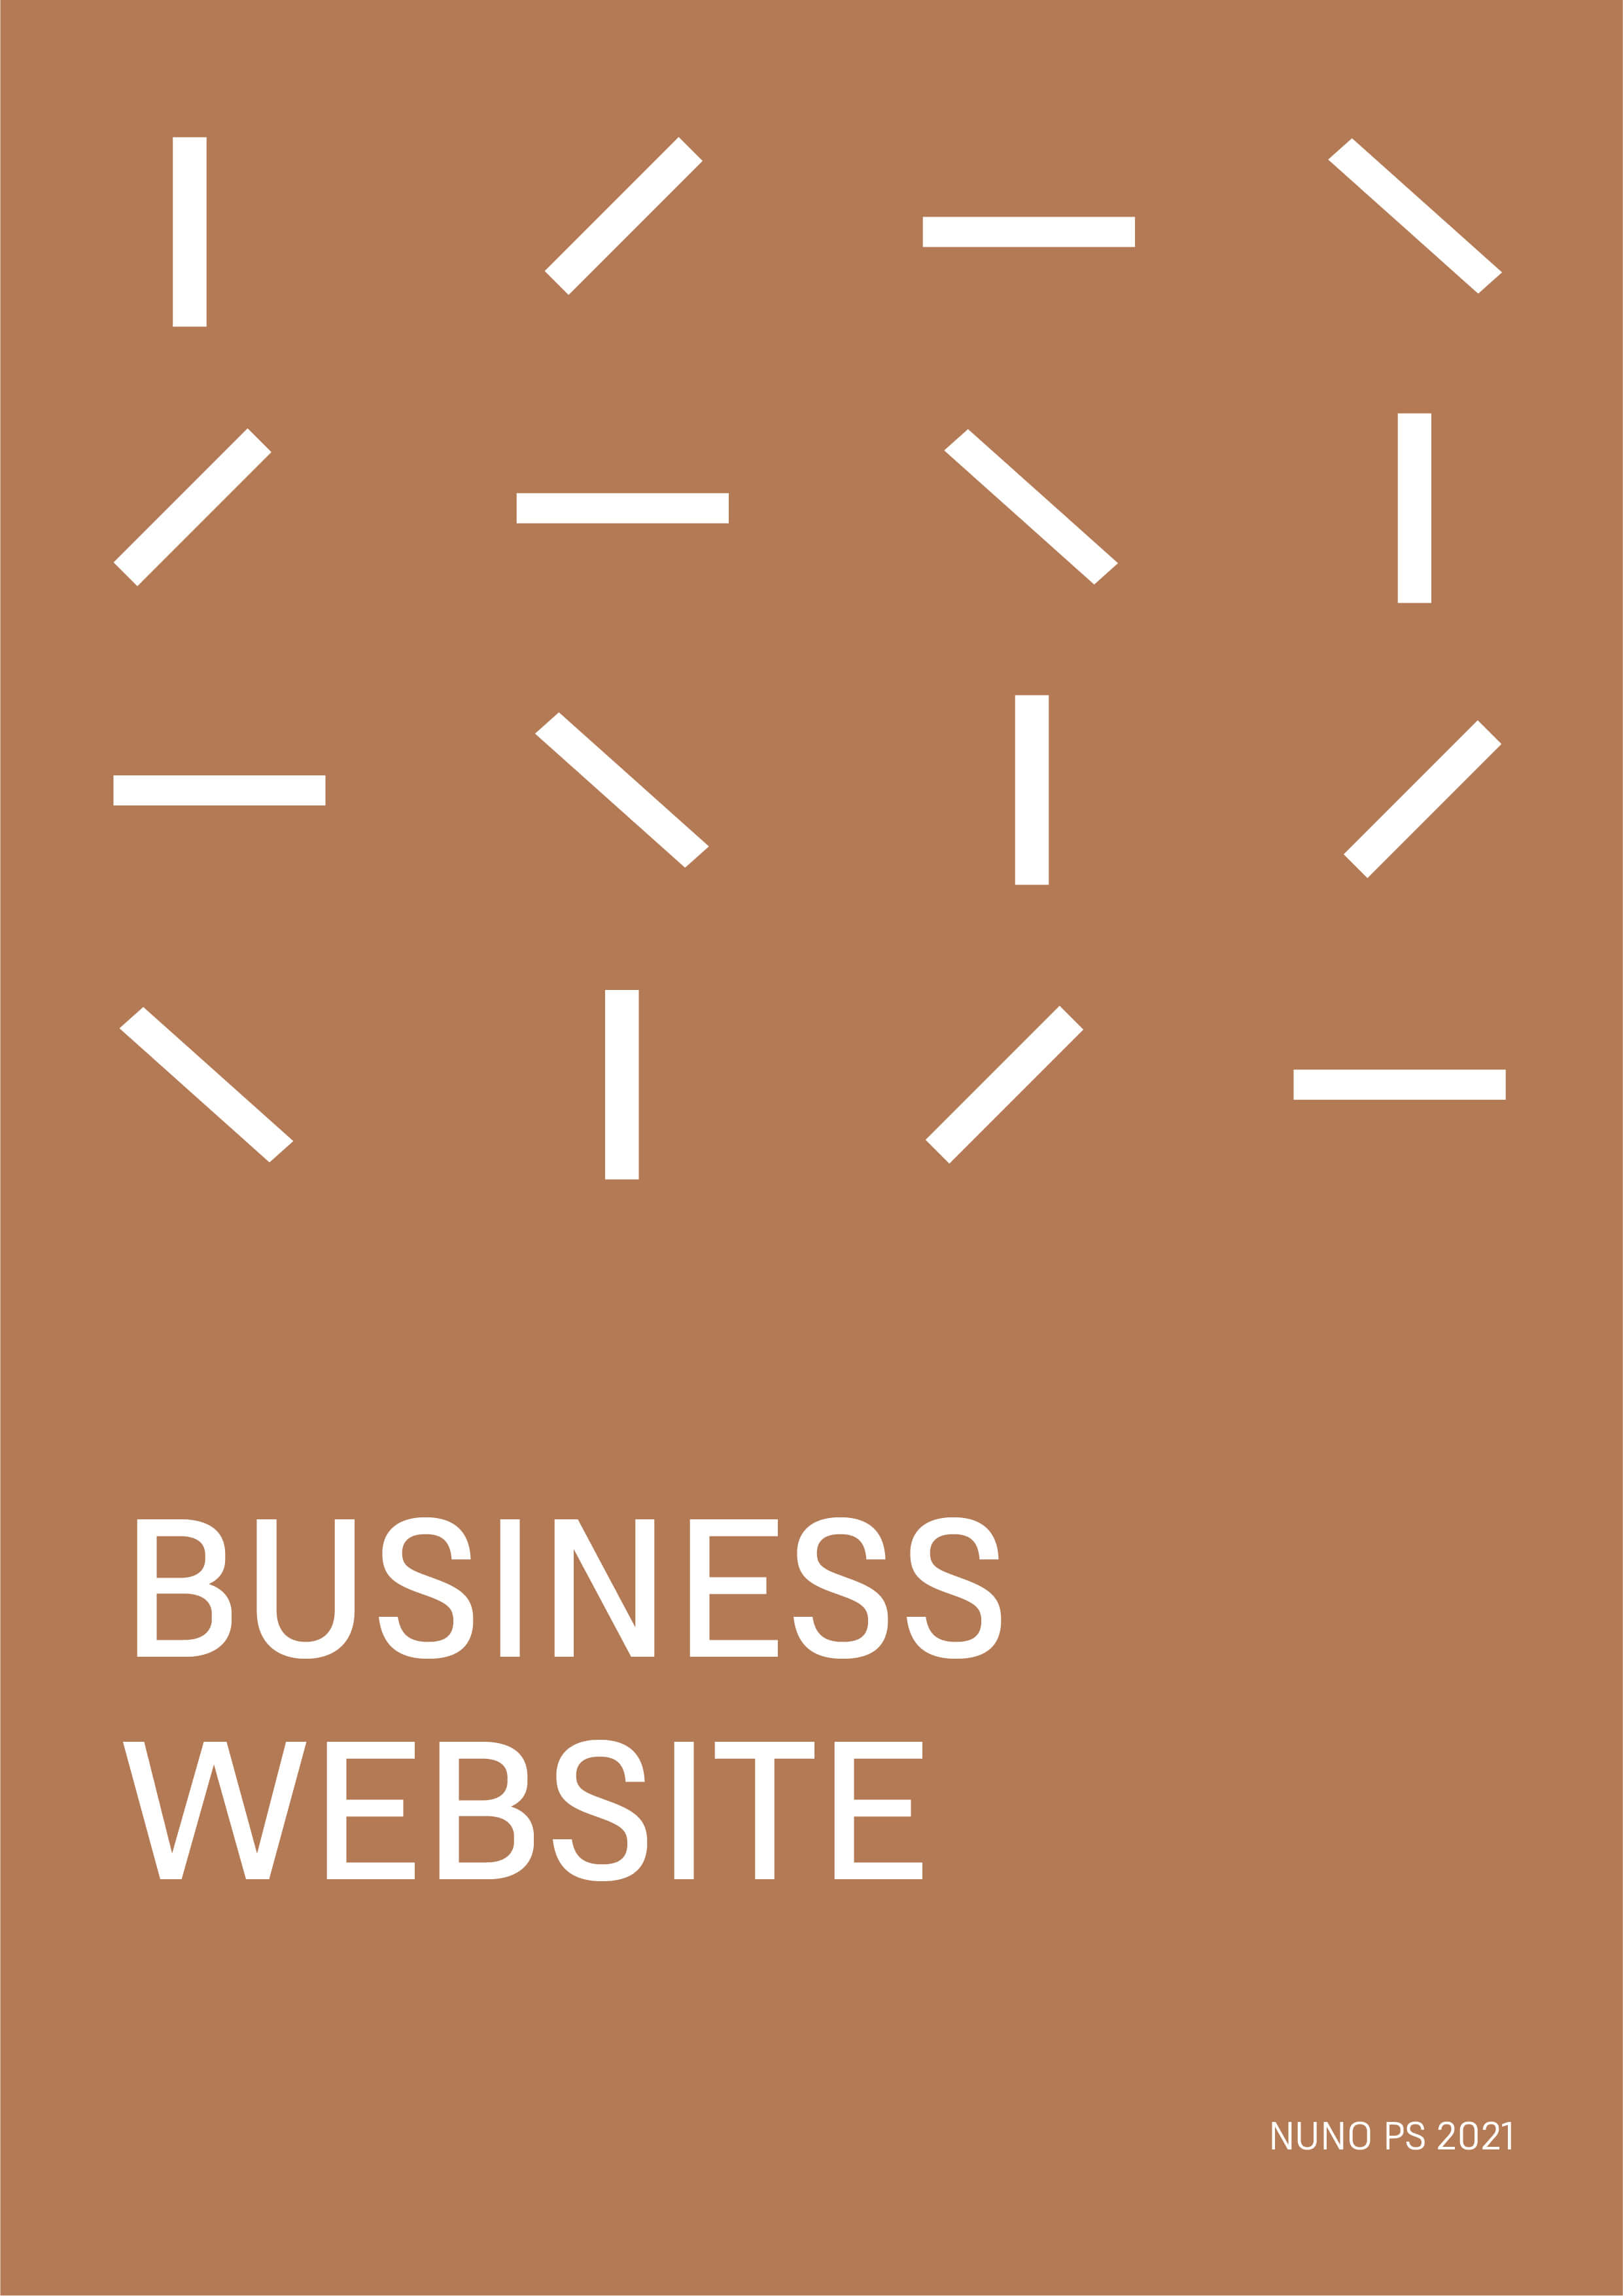 Business websites image